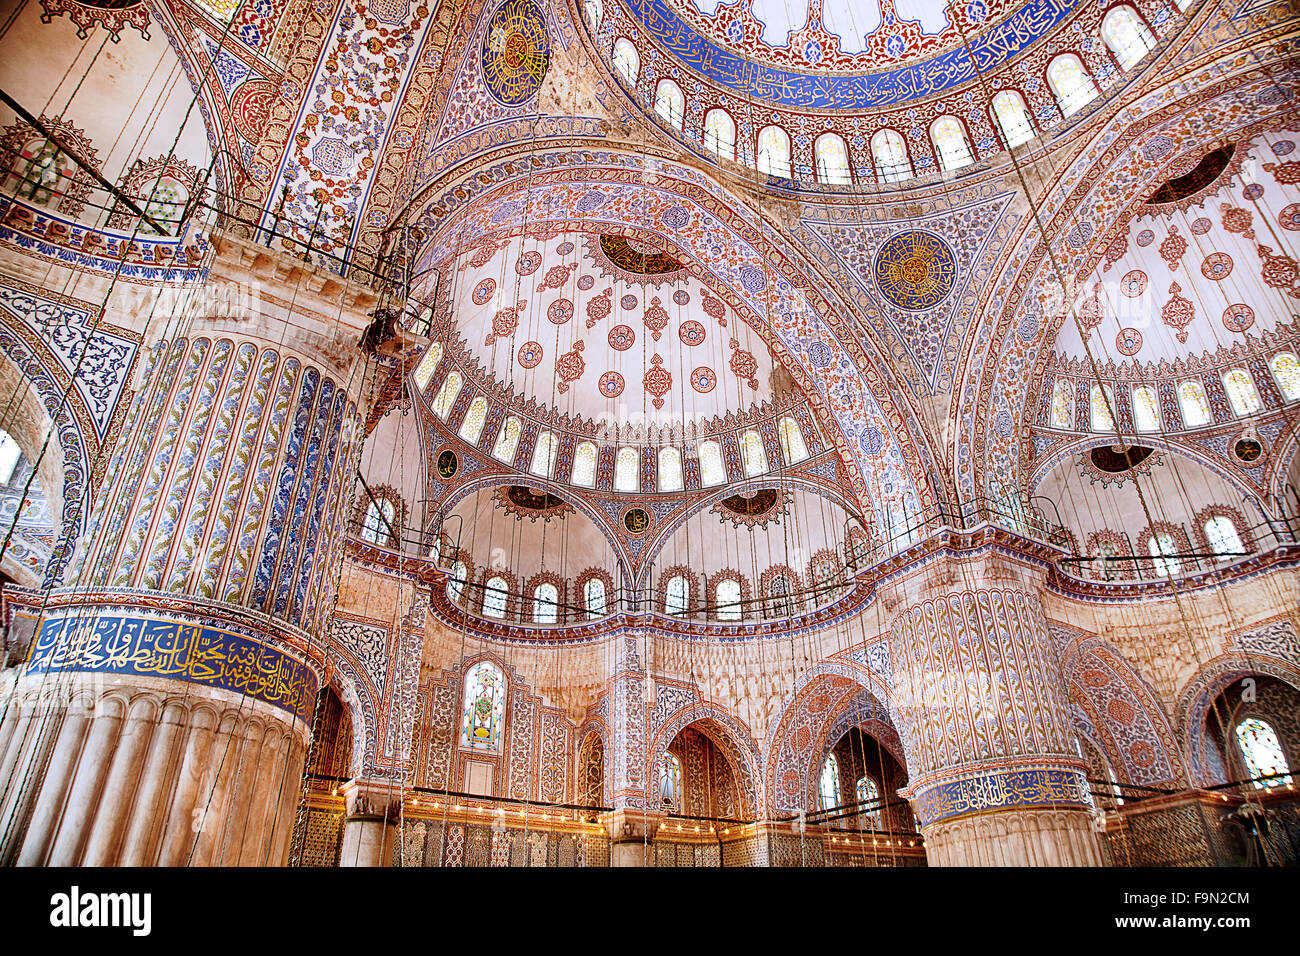 Blaue Moschee Sultanahmet in Istanbul Türkei - Interieur Stockfoto